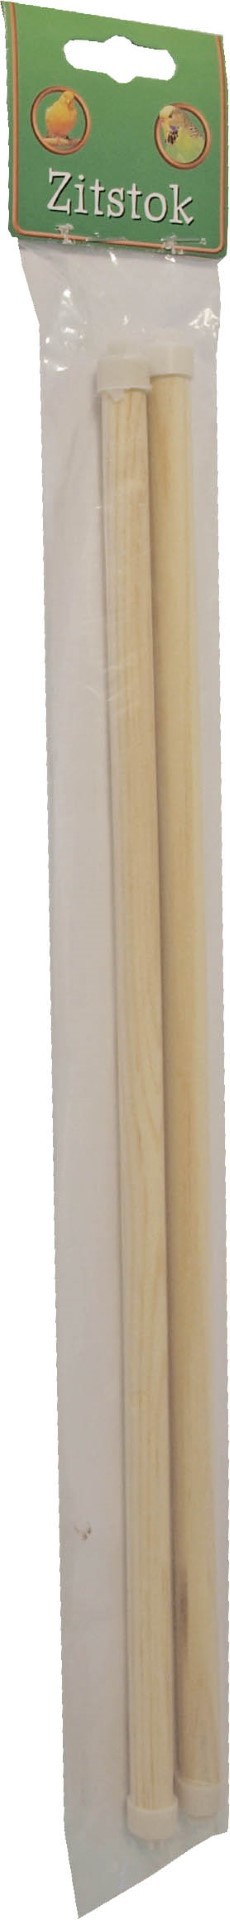 Zak a 2 houten zitstok met dop 12 mm/40 cm